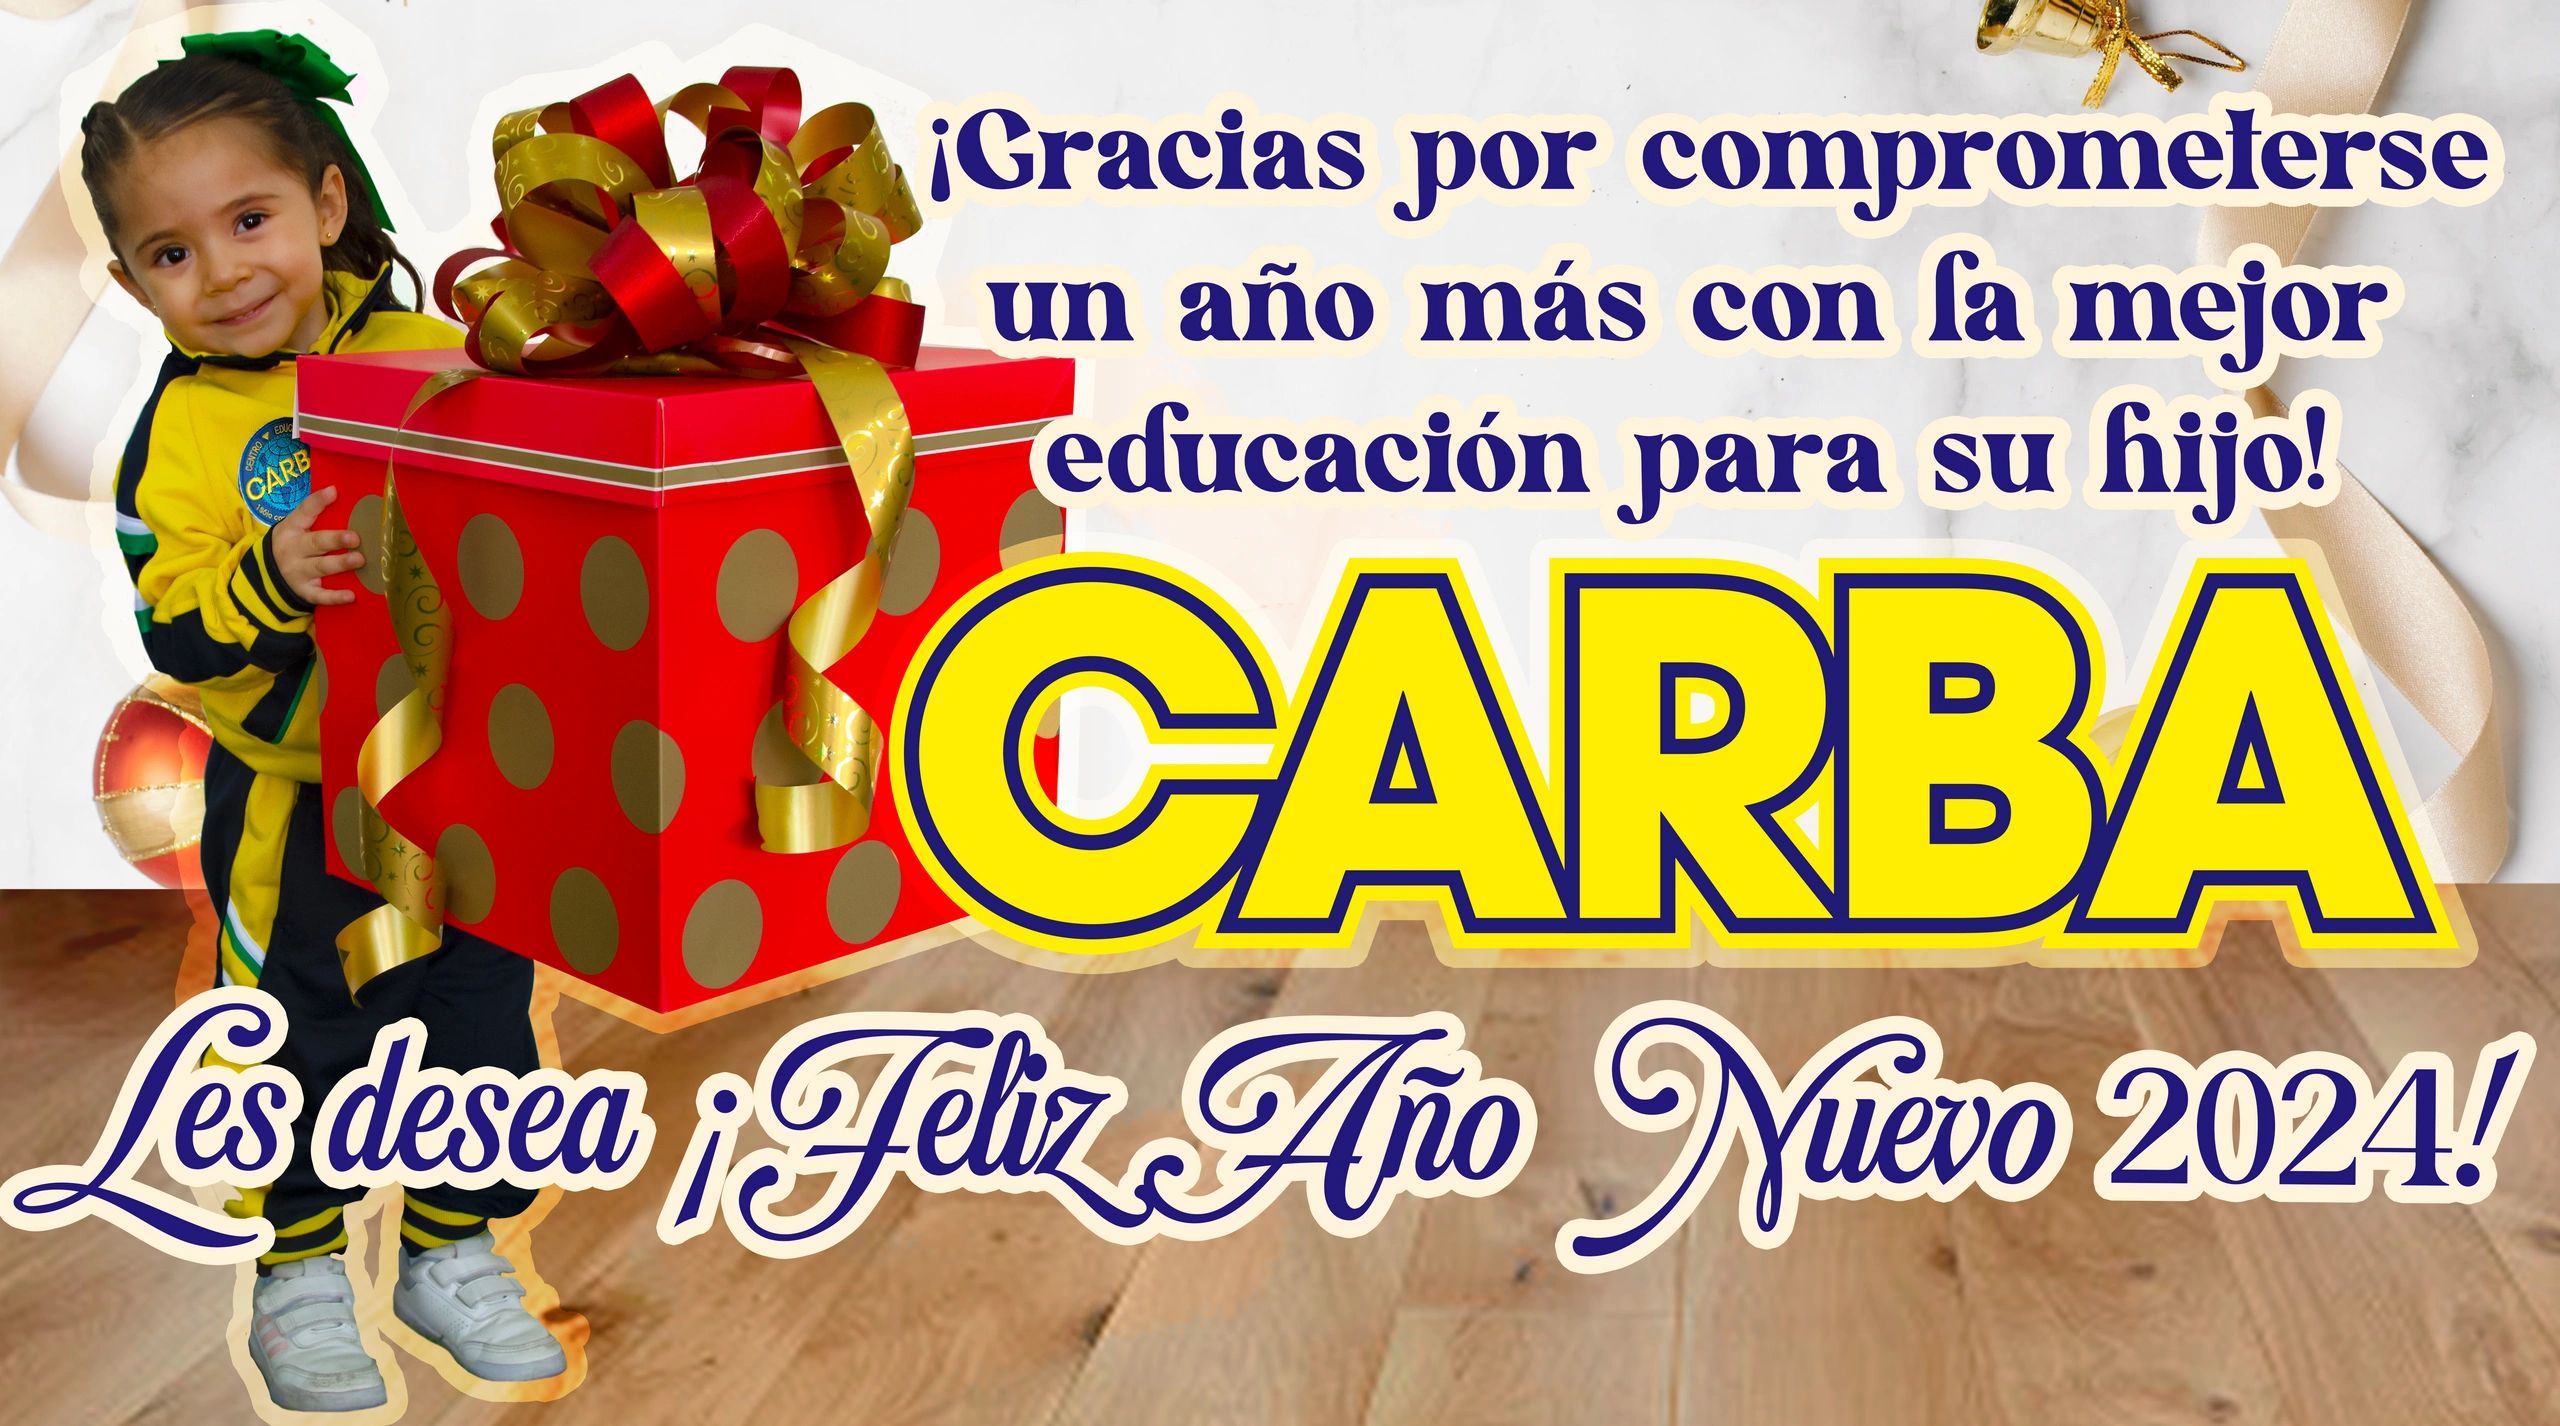 ¡Feliz Año Nuevo 2024 les desea Colegio CARBA!
Lleno de alegría, amor y muchas bendiciones 😊🙏🏻👏�